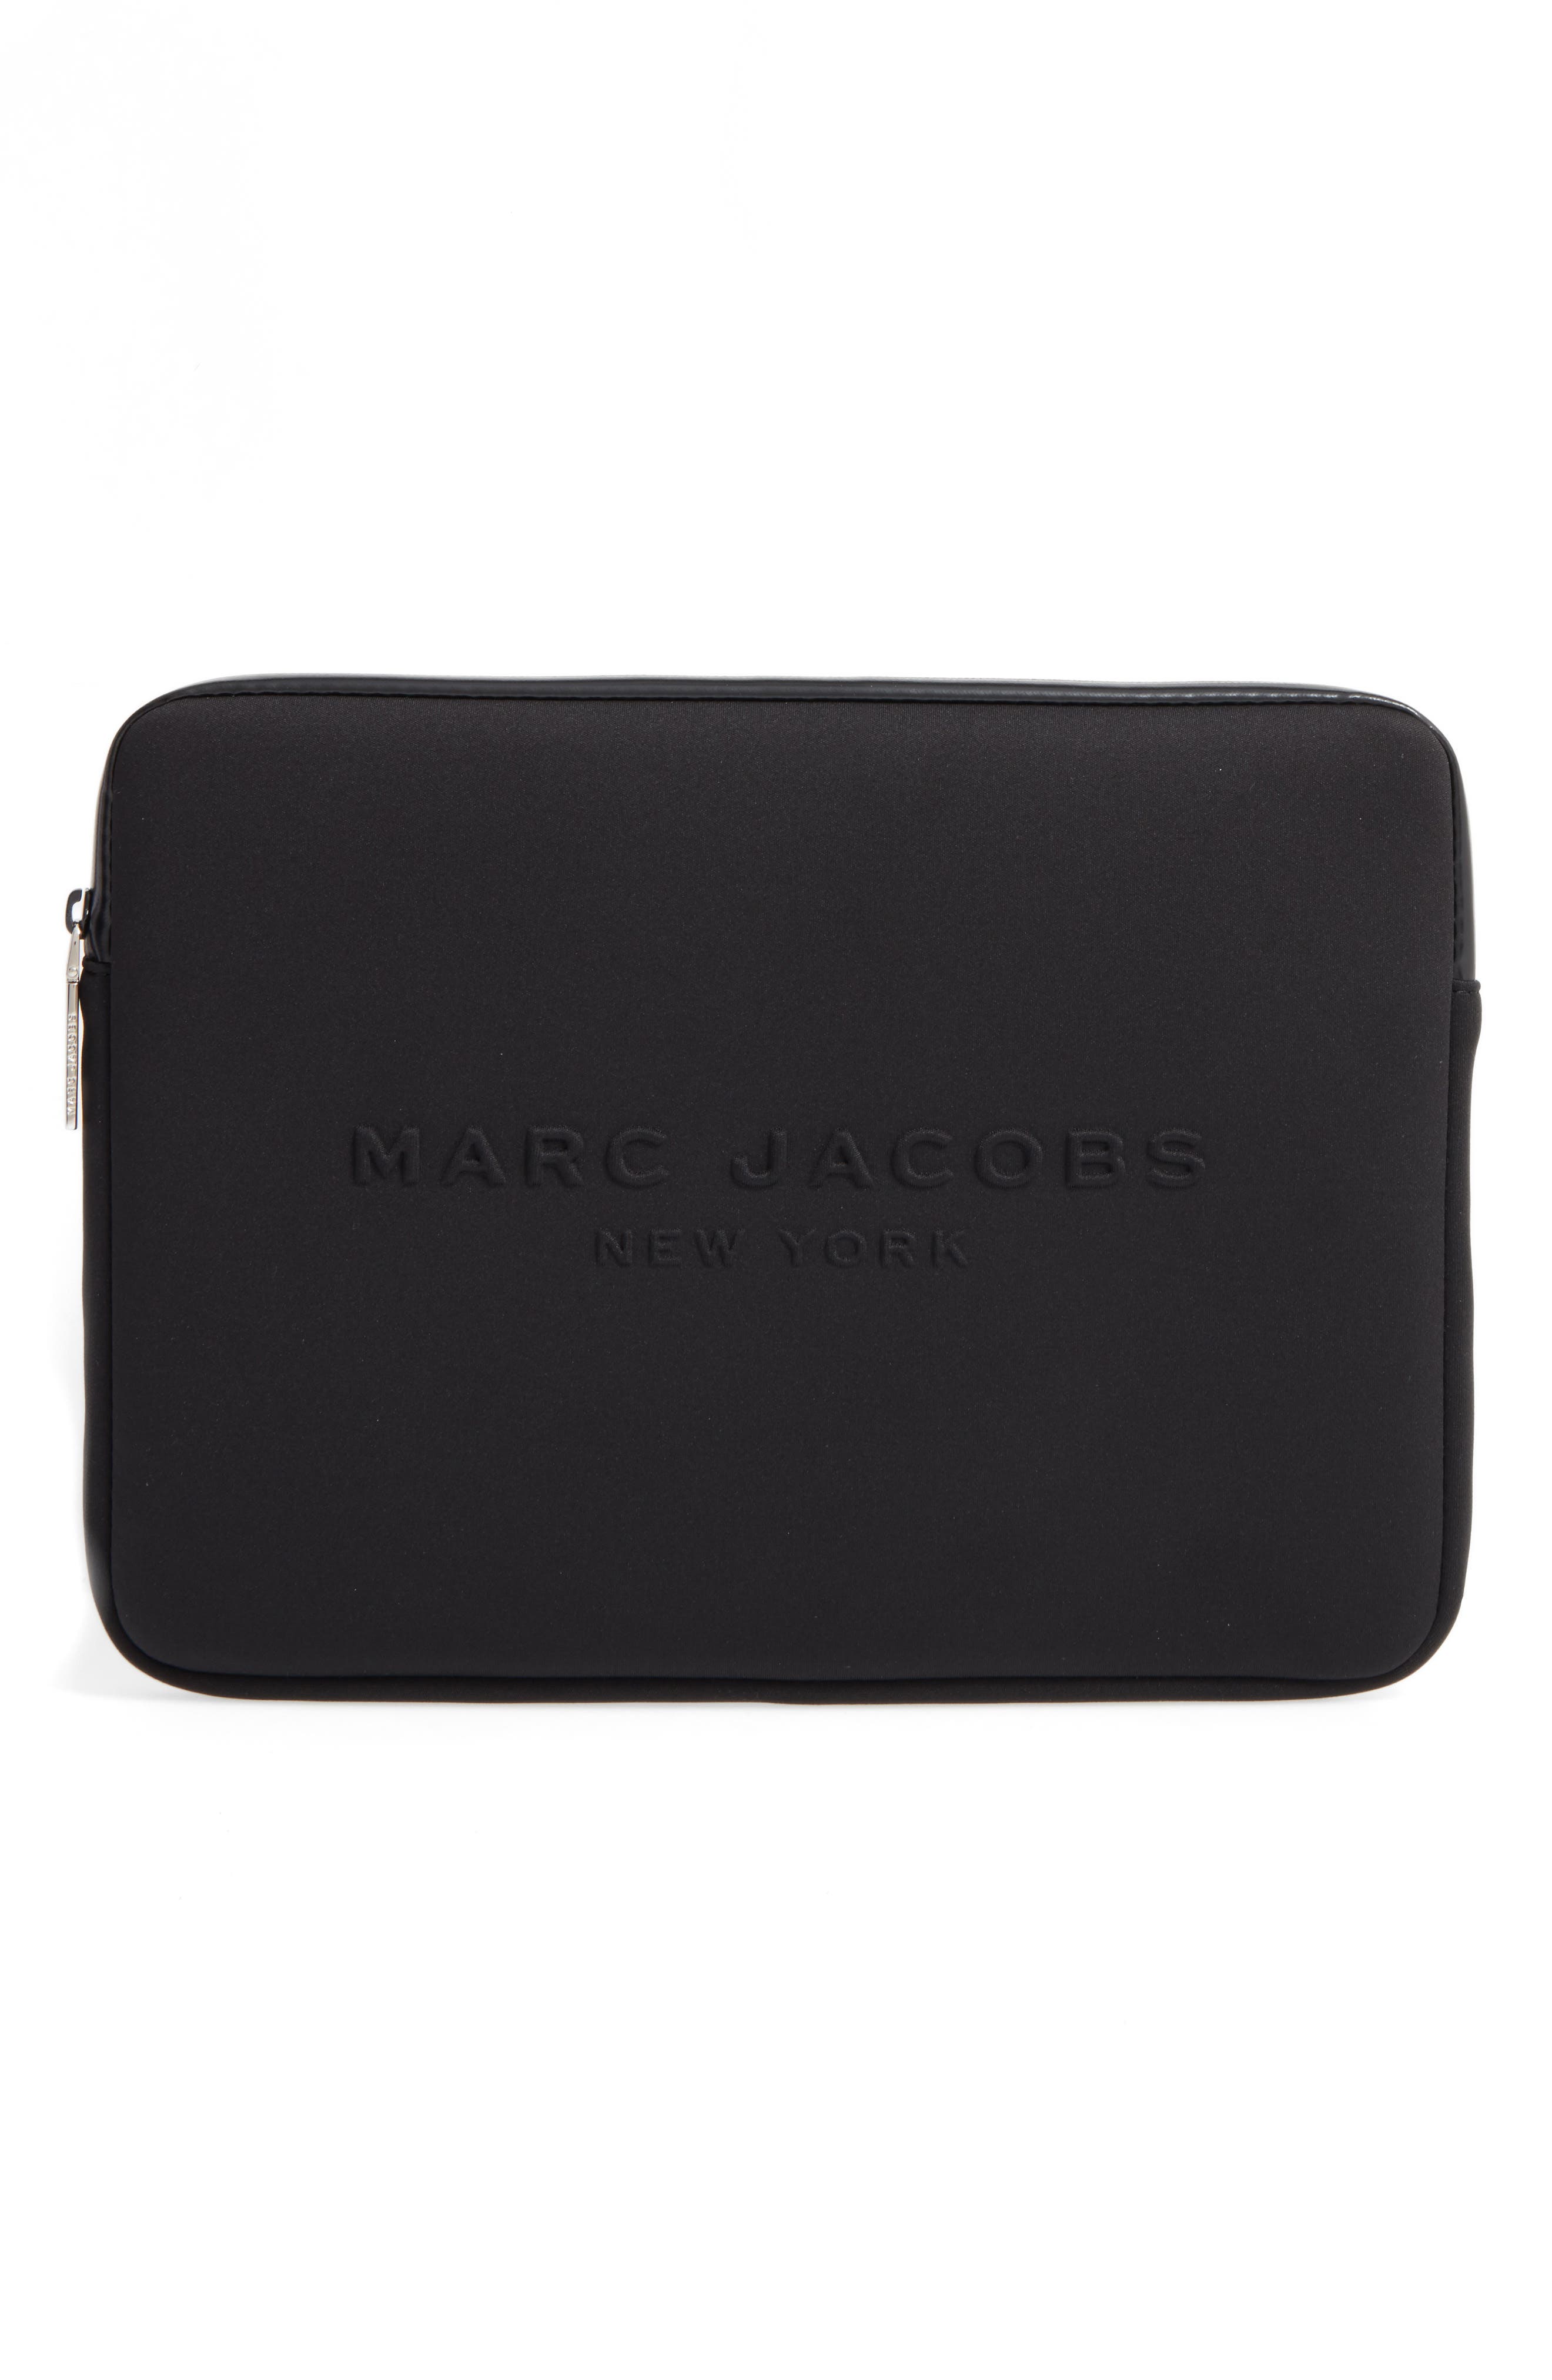 marc jacobs laptop sleeve